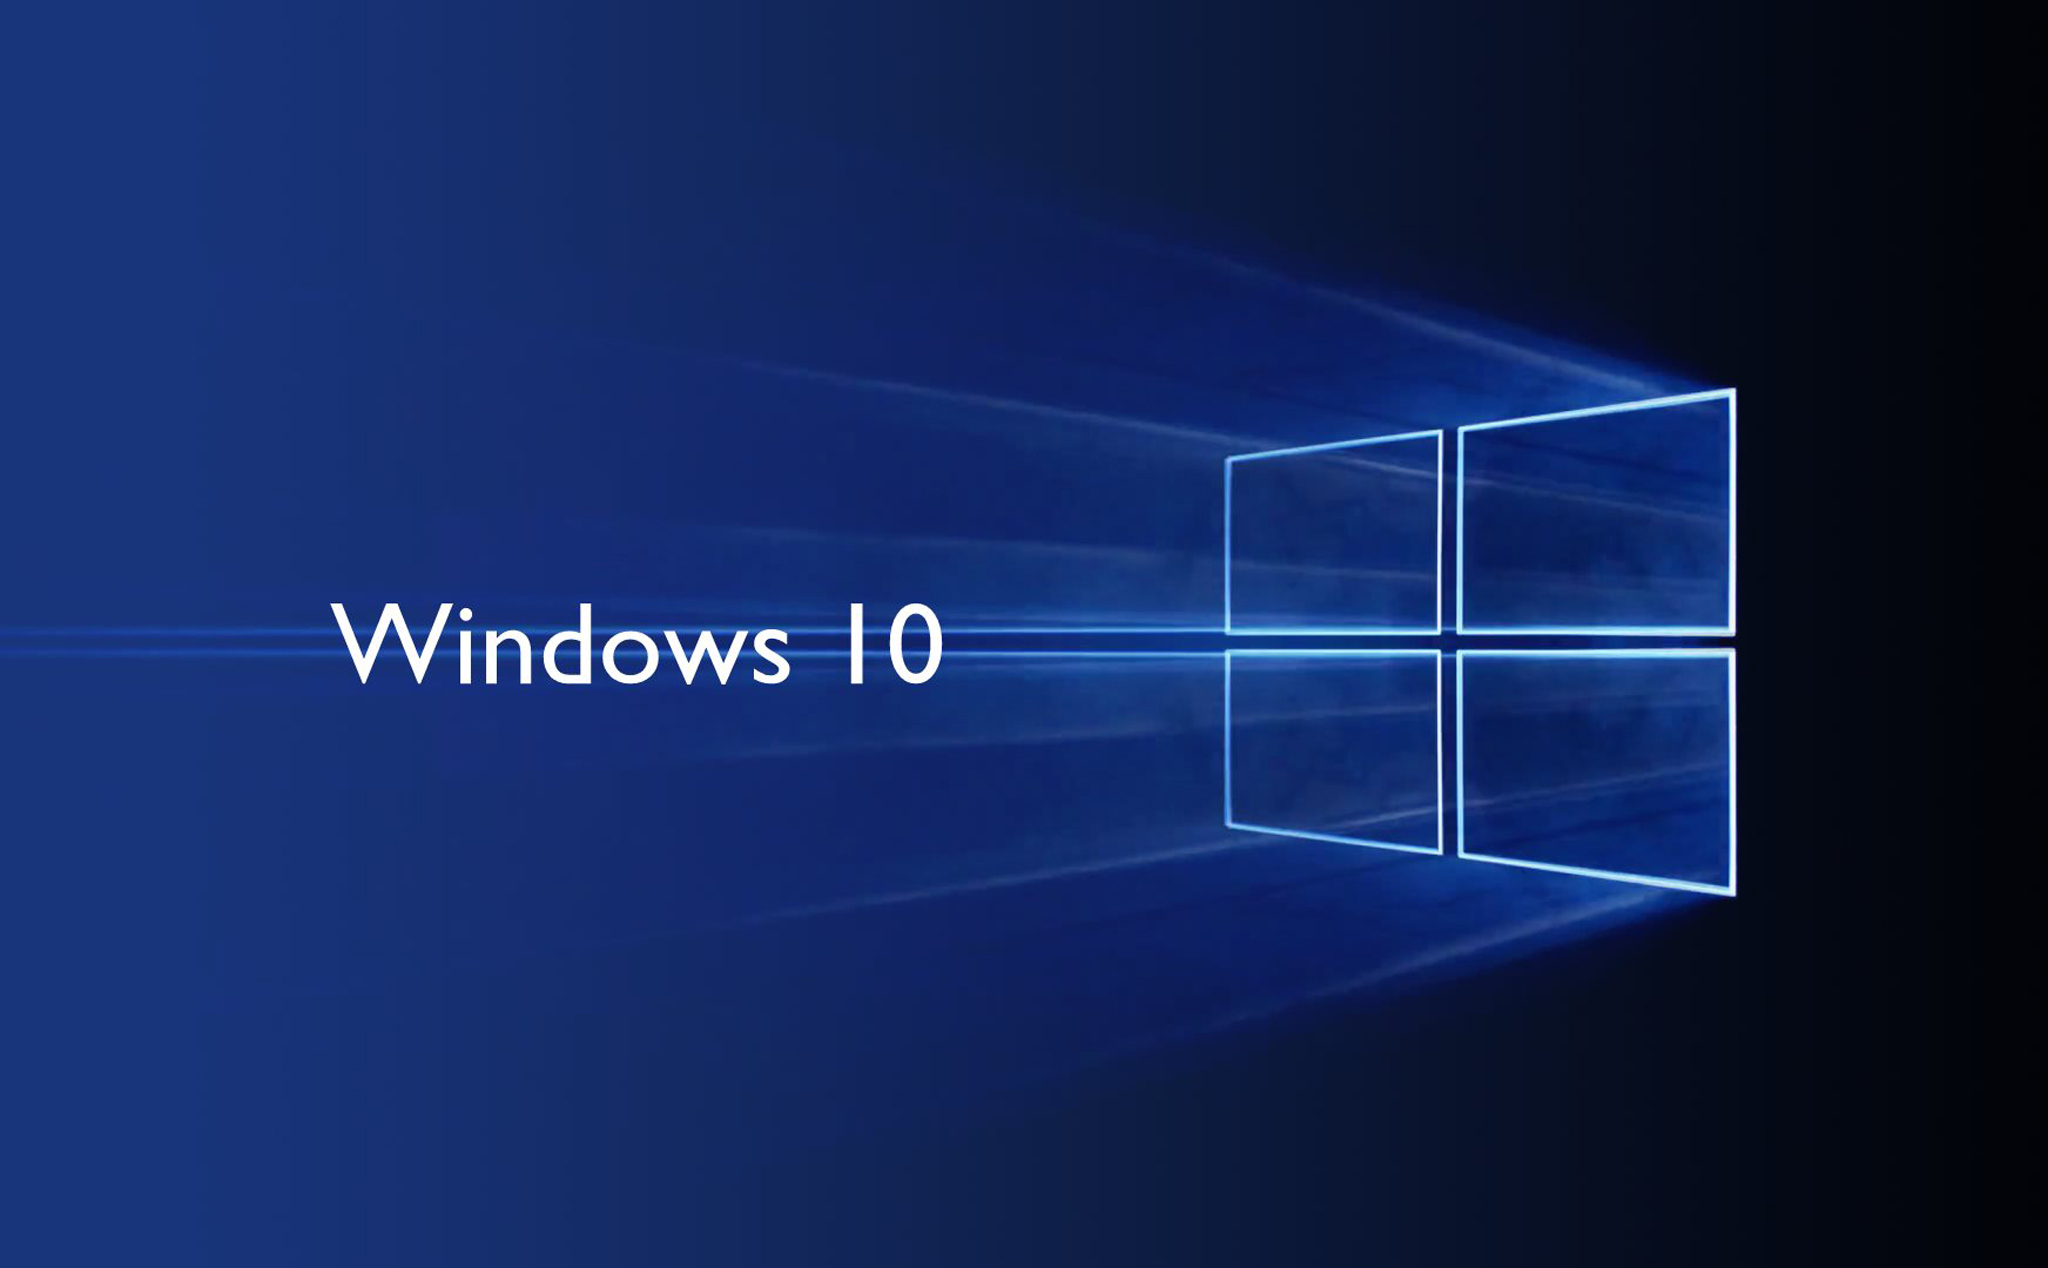 Windows 10 đã chiếm hơn một nửa thị phần PC Windows trên thế giới